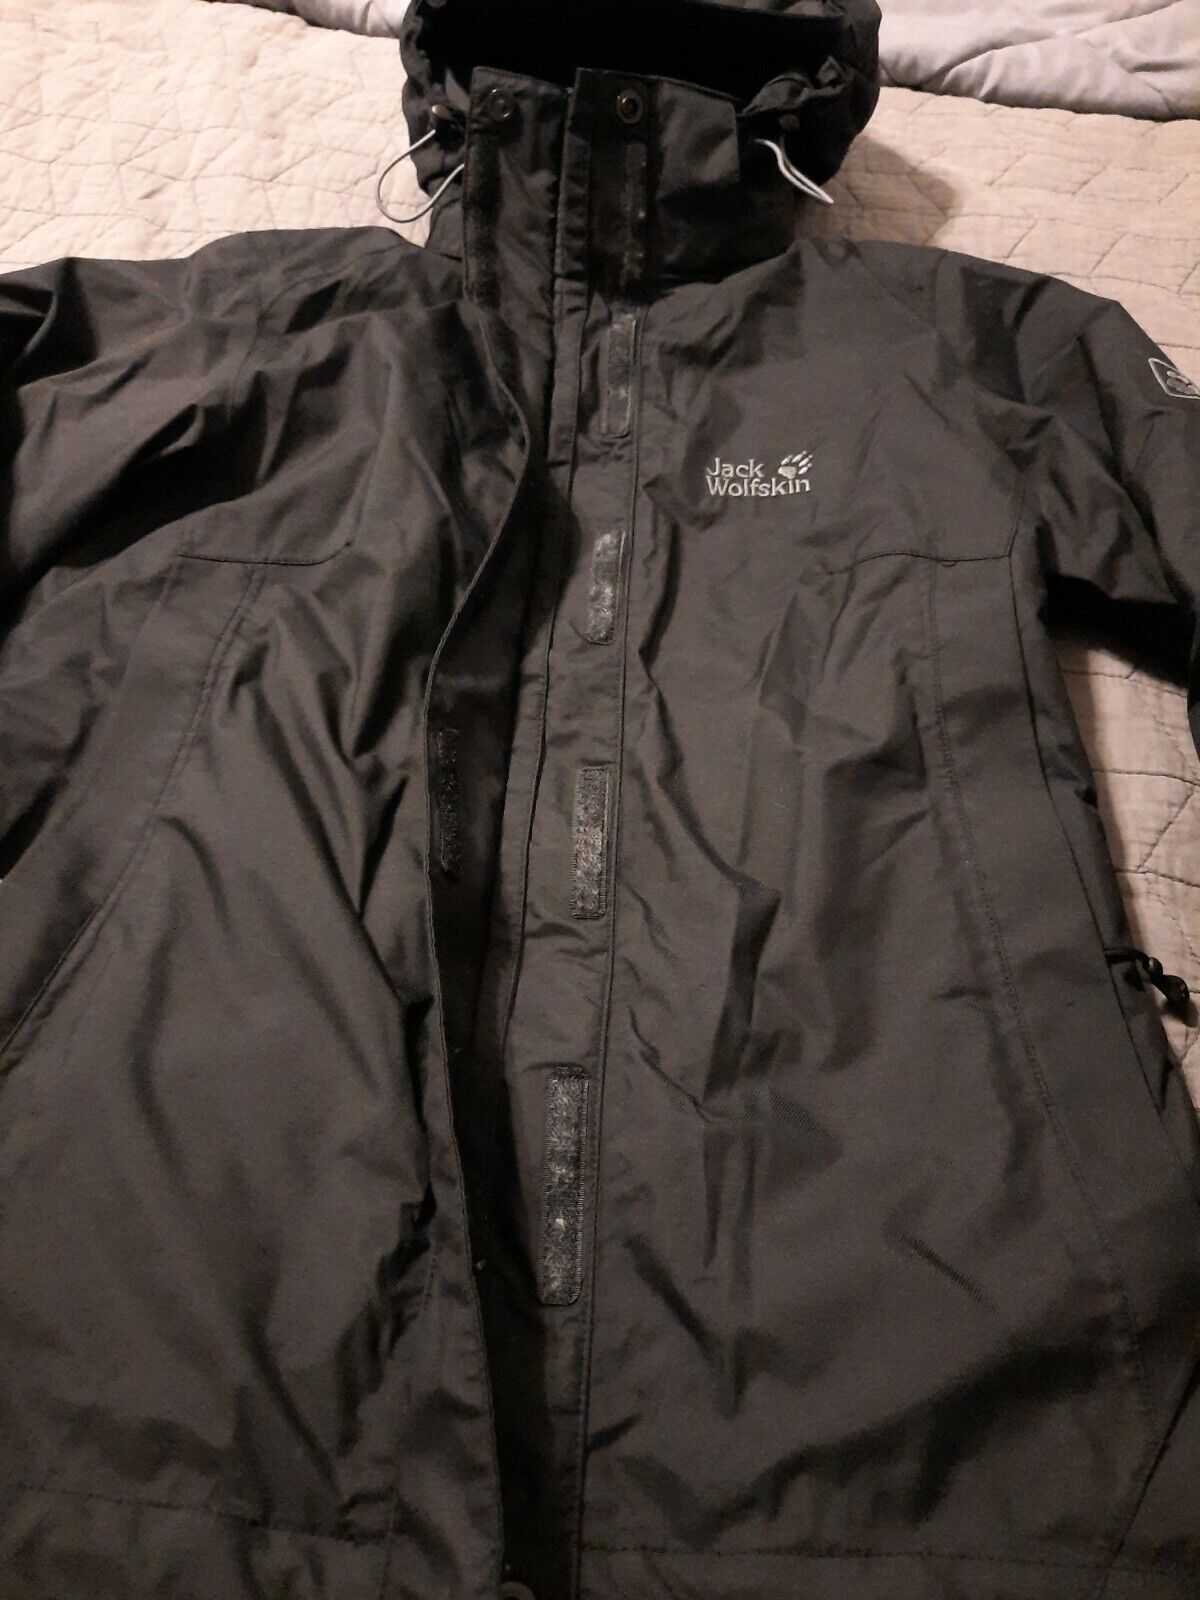 JACK WOLFSKIN Waterproof Small | Zip Hood Rain Coat | eBay